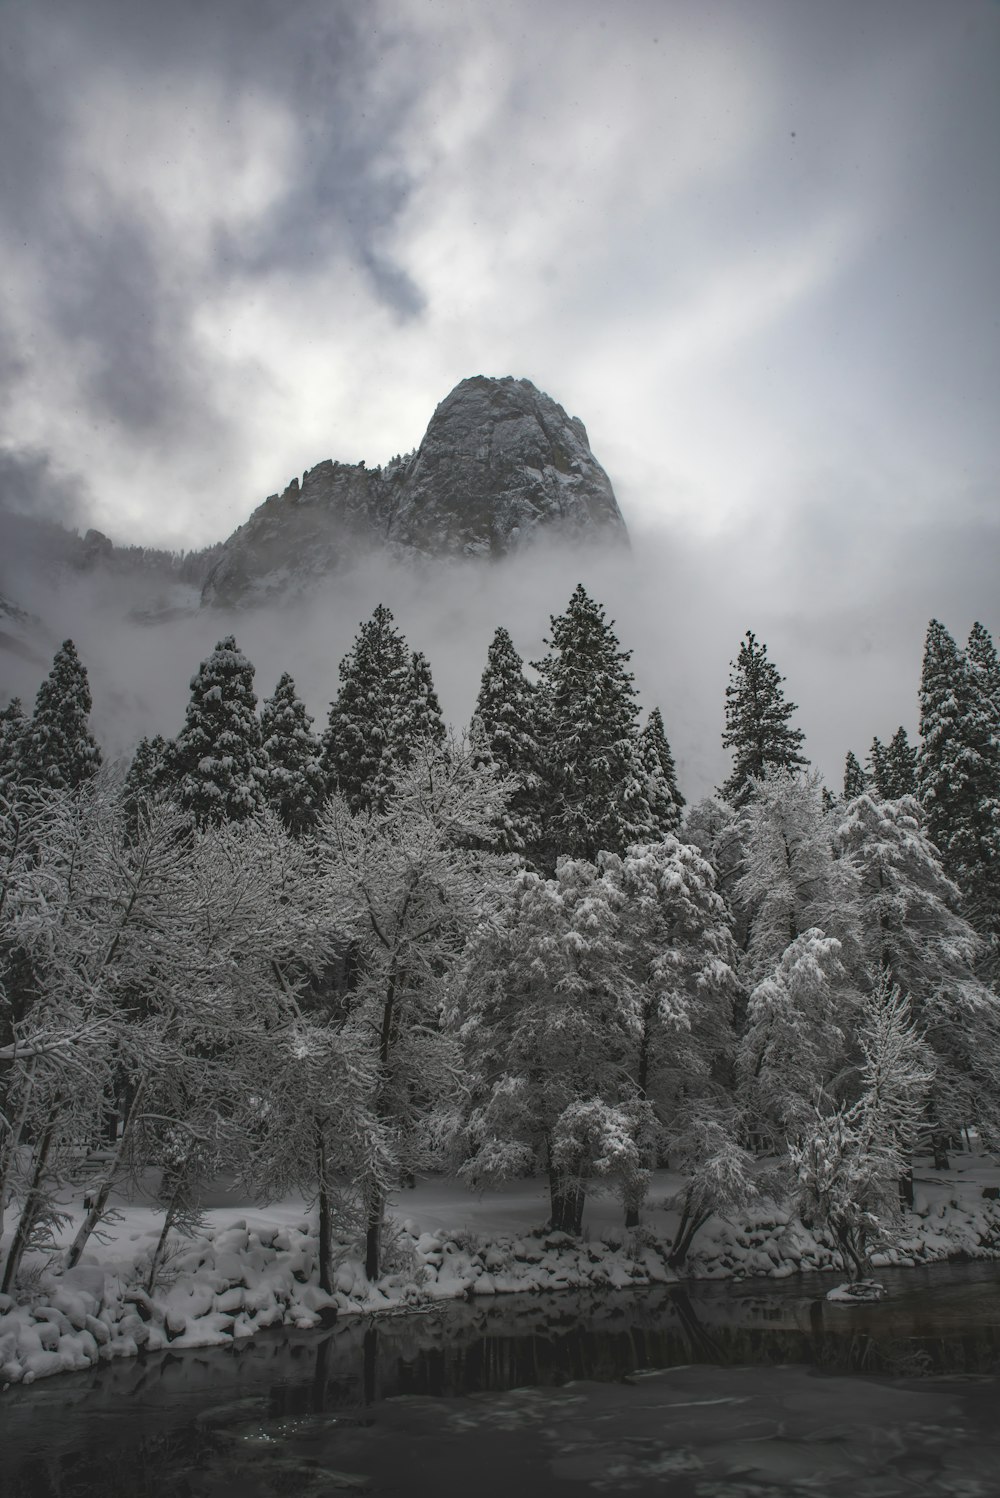 fotografia in scala di grigi di alberi e montagne